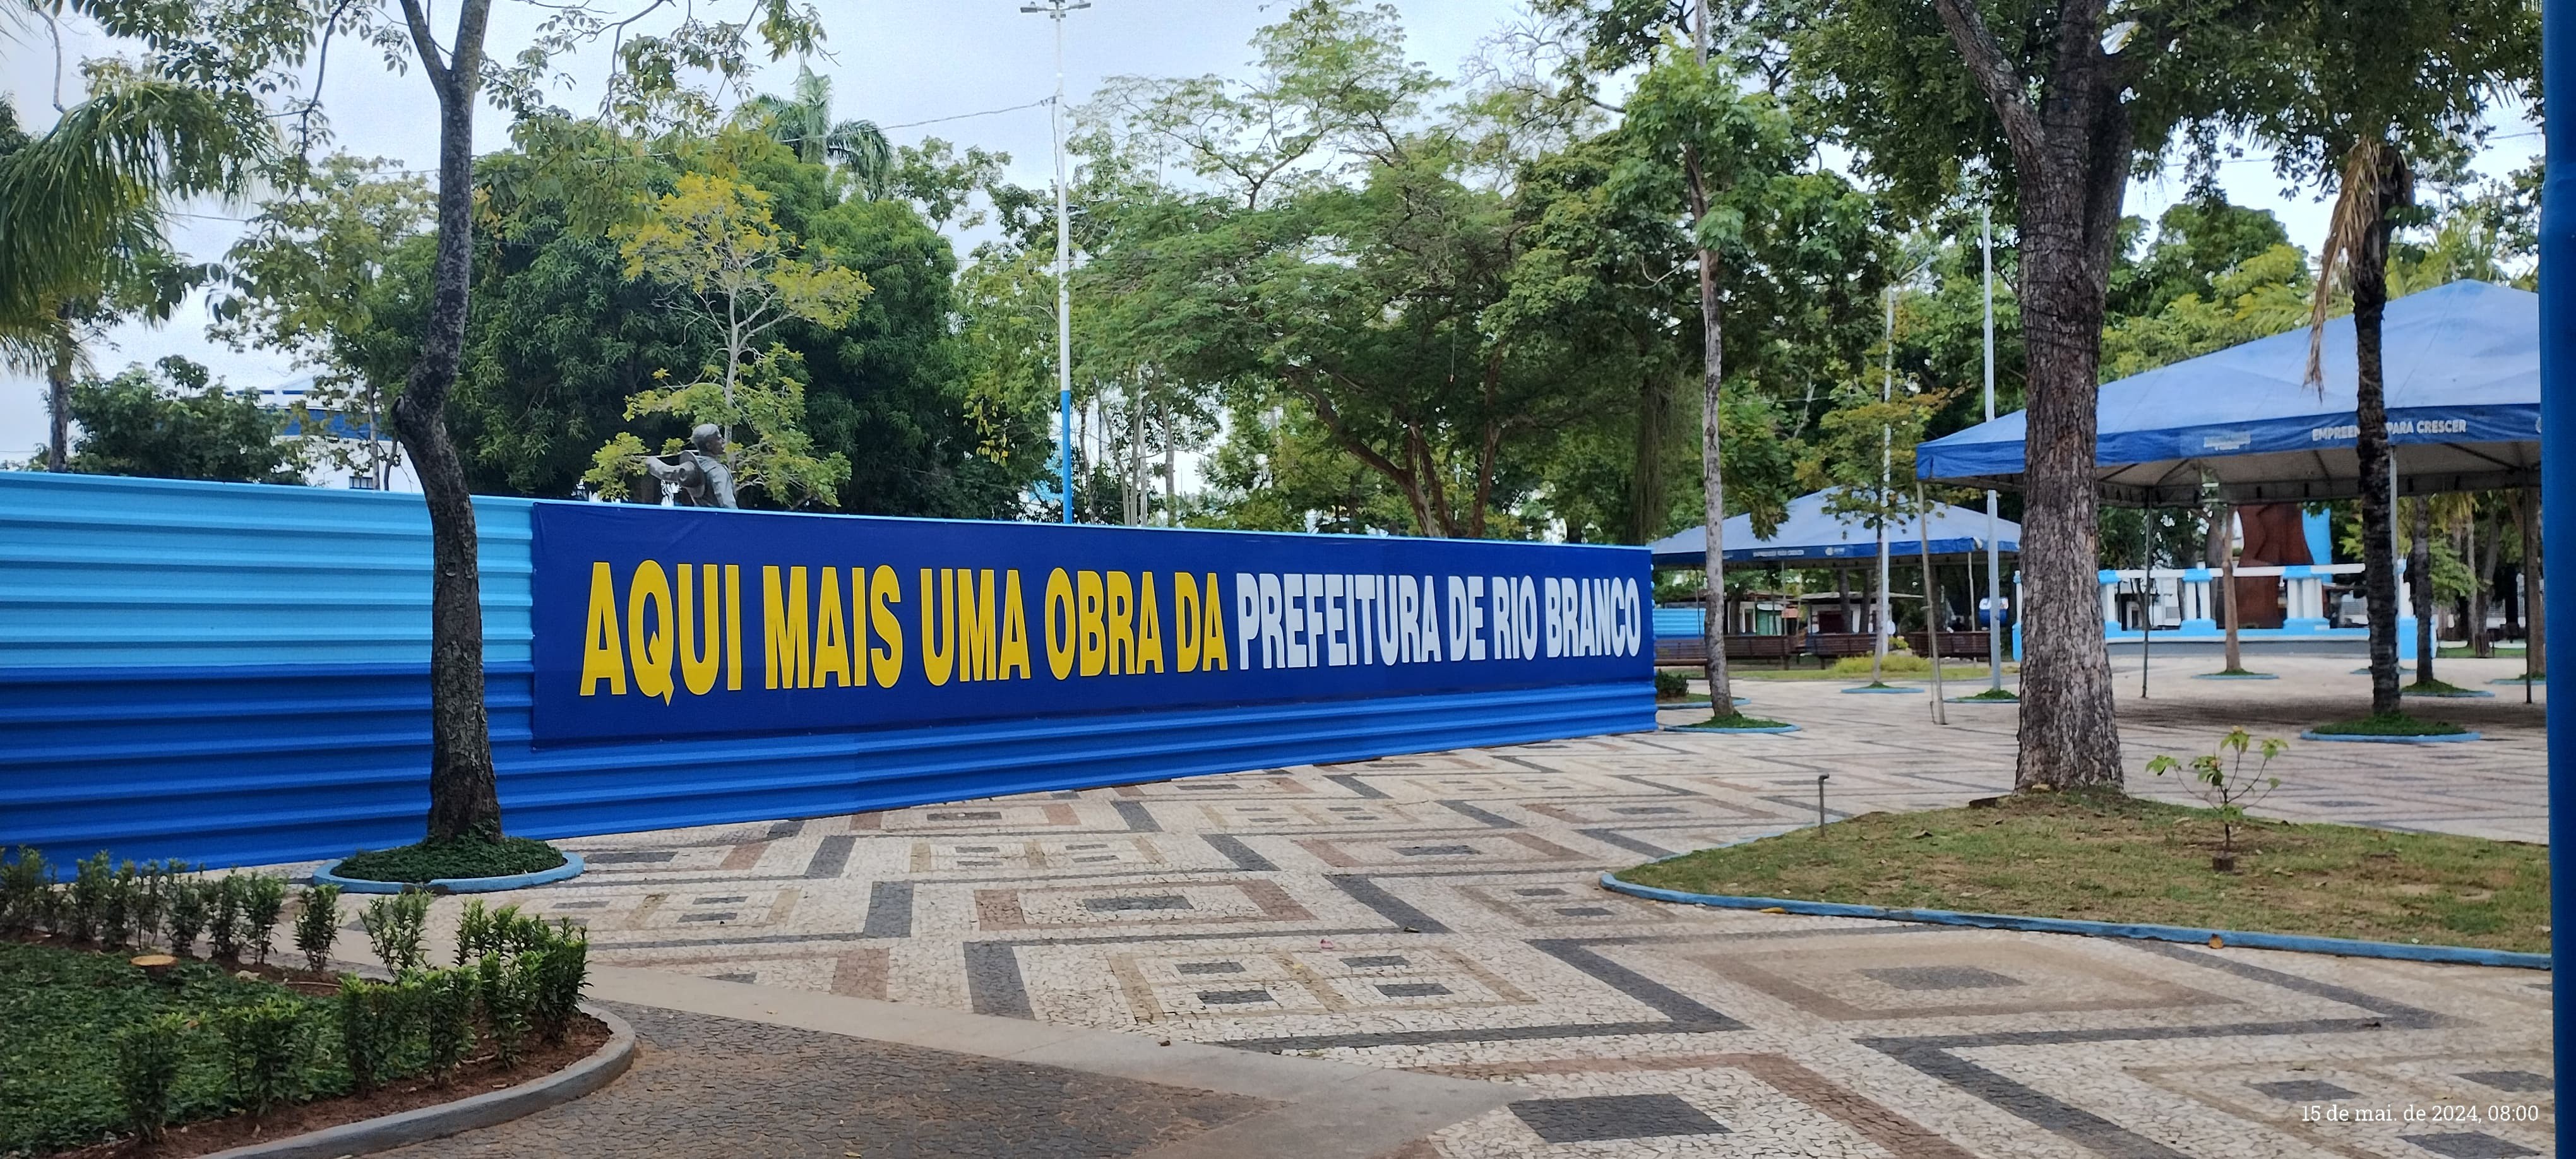 MP investiga suposto dano ao patrimônio histórico em praça de Rio Branco